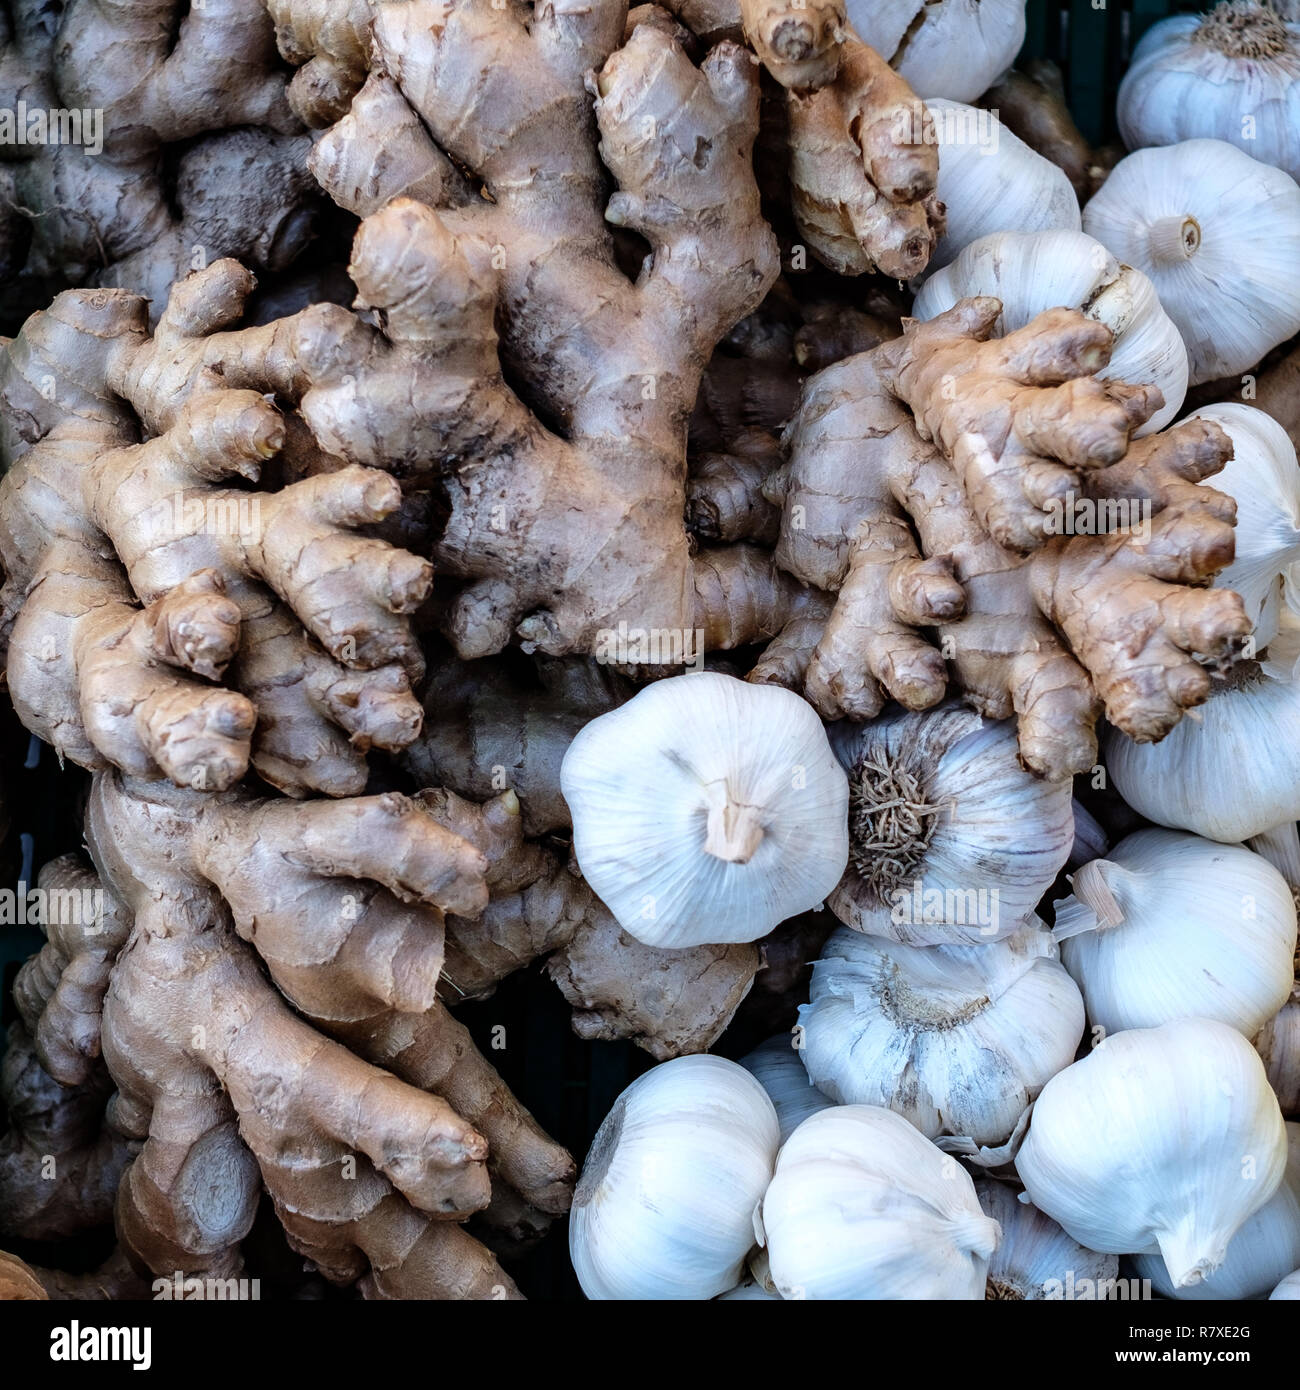 La racine de gingembre et l'ail. L'alimentation naturelle, les légumes, les légumes bio Banque D'Images